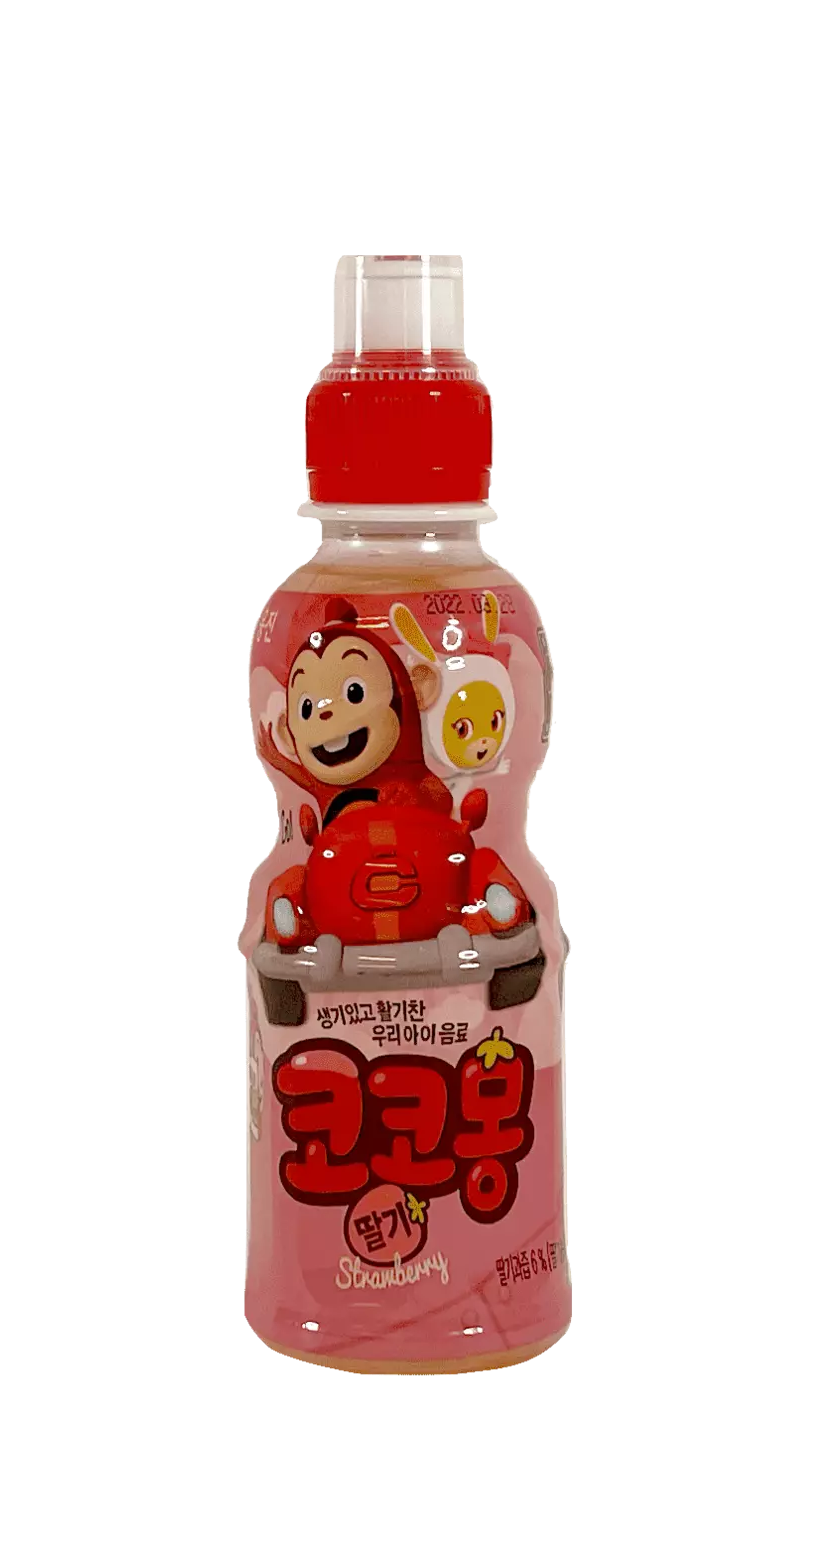 Cocomong 草莓果汁饮料 200ml Woongjin 韩国